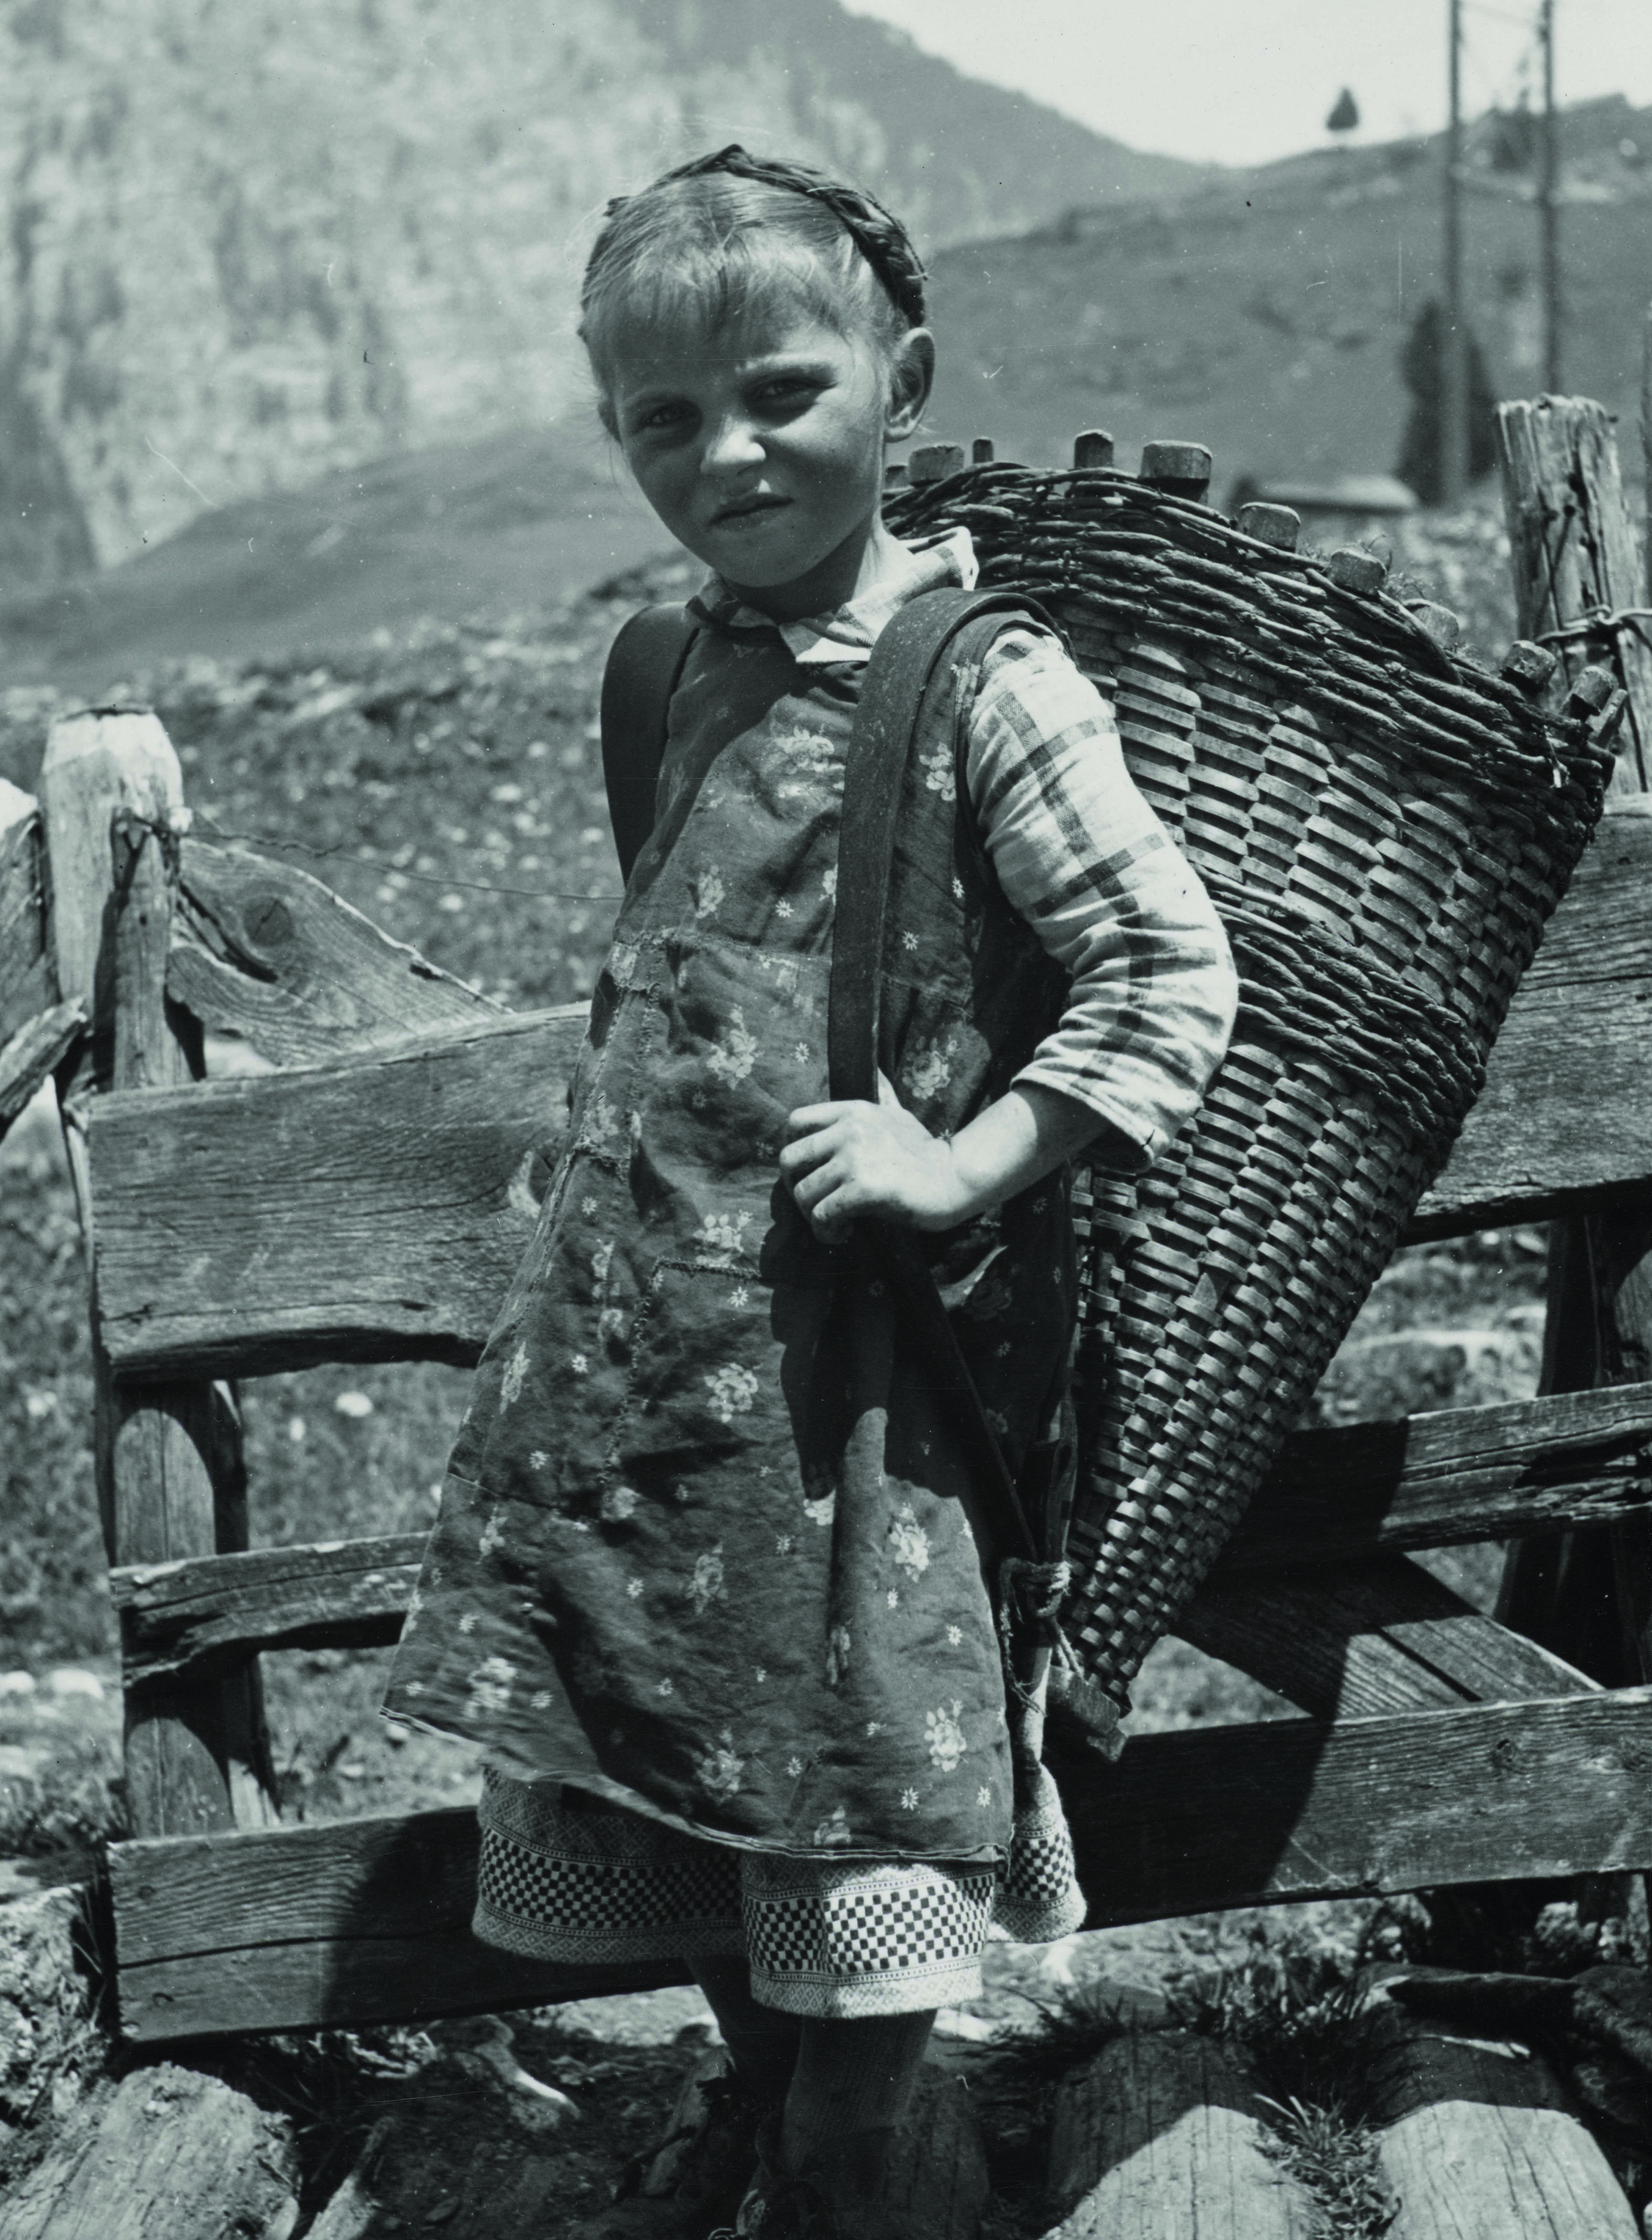 المزارعة الطفلة تسيتسيليا شميديغ بعدسة المصوّر ليونارد فون مات، حوالي العام 1942.